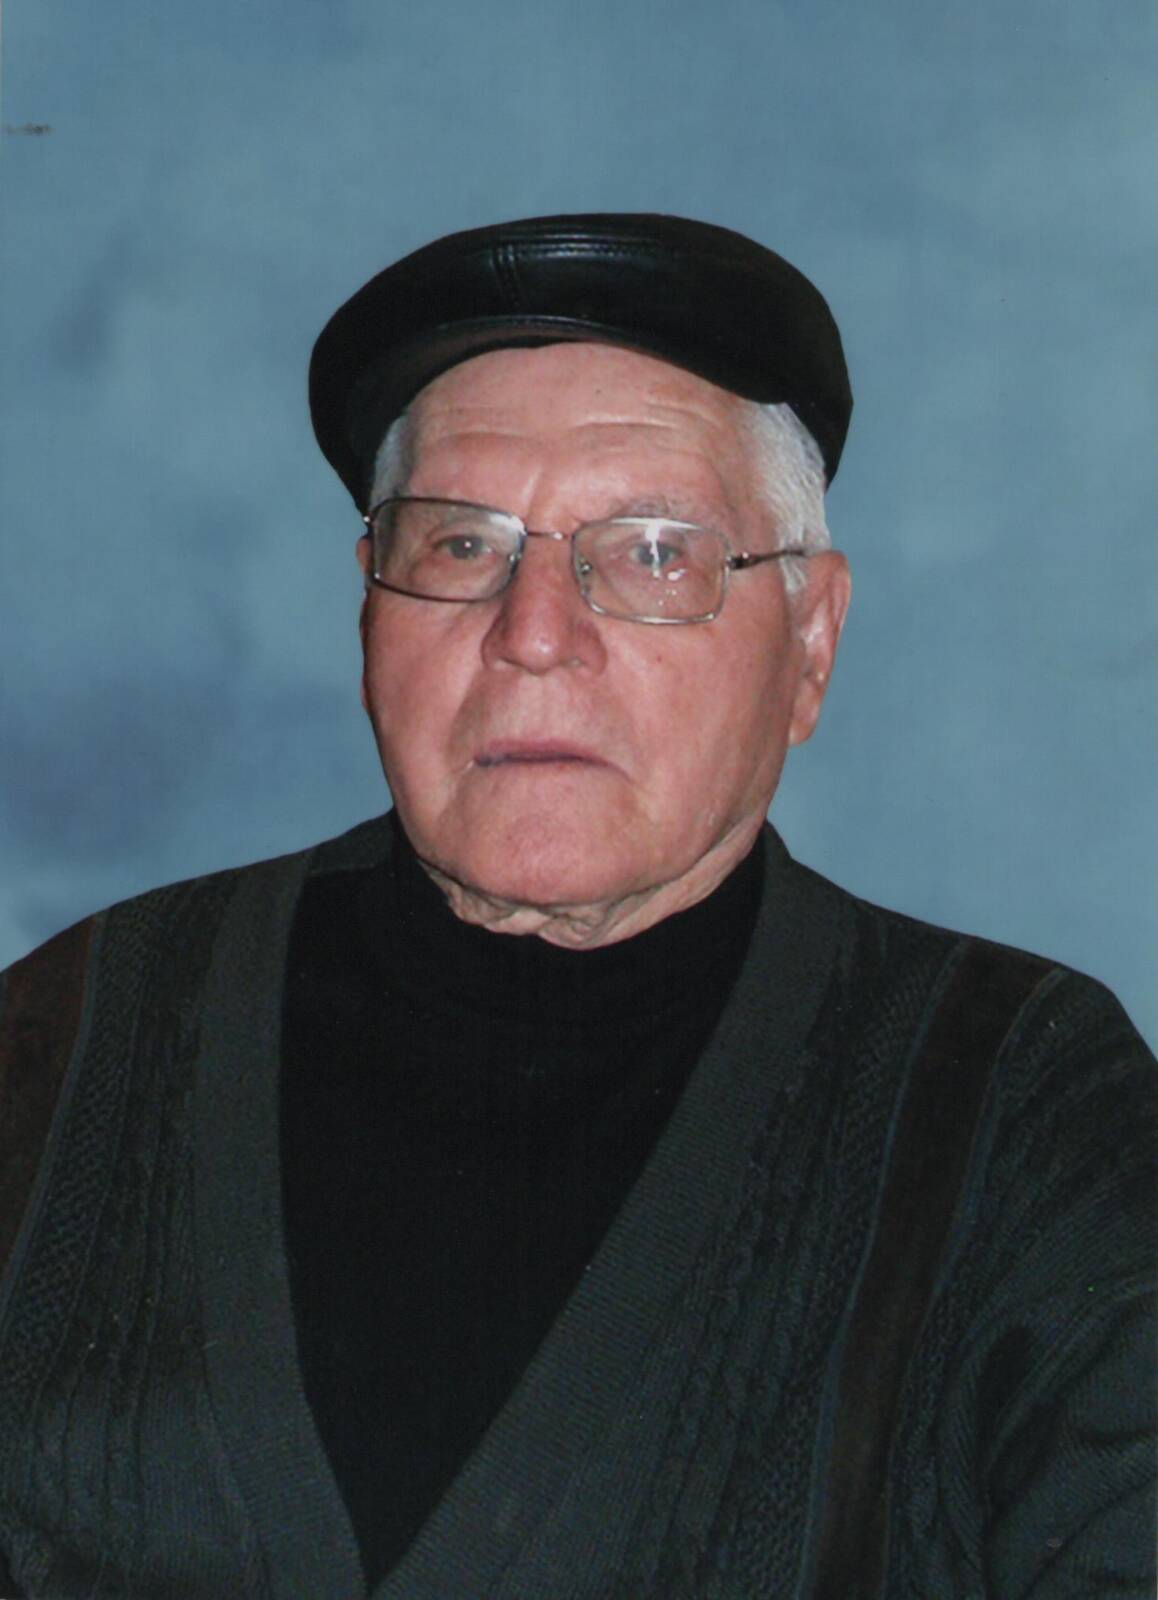 Έφυγε από την ζωή ο Γεώργιος Ευαγγελόπουλος σε ηλικία 98 ετών – Η κηδεία θα τελεστεί το Σάββατο 27 Μαΐου